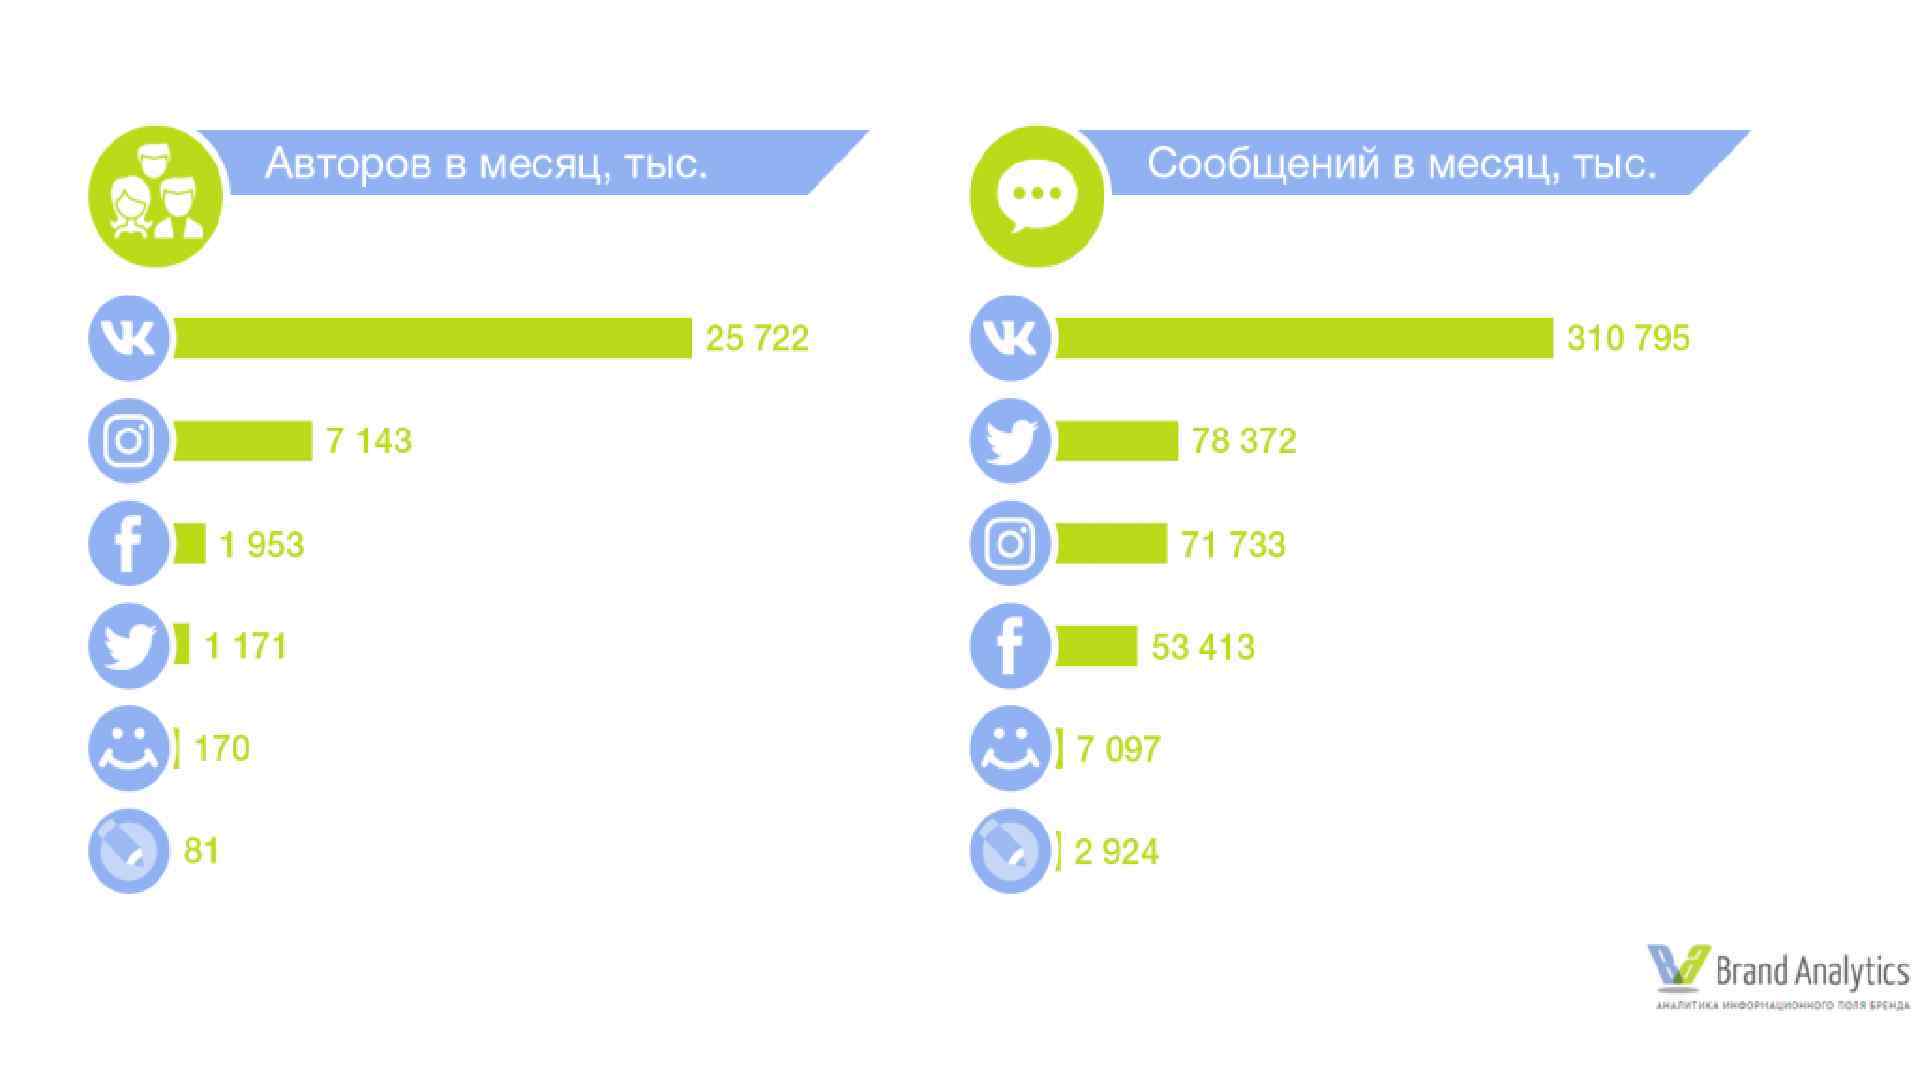 Статистика социальных сетей в россии. Популярные социальные сети. Самые популярные социальные сети. Популярность социальных сетей. Аудитория социальных сетей.